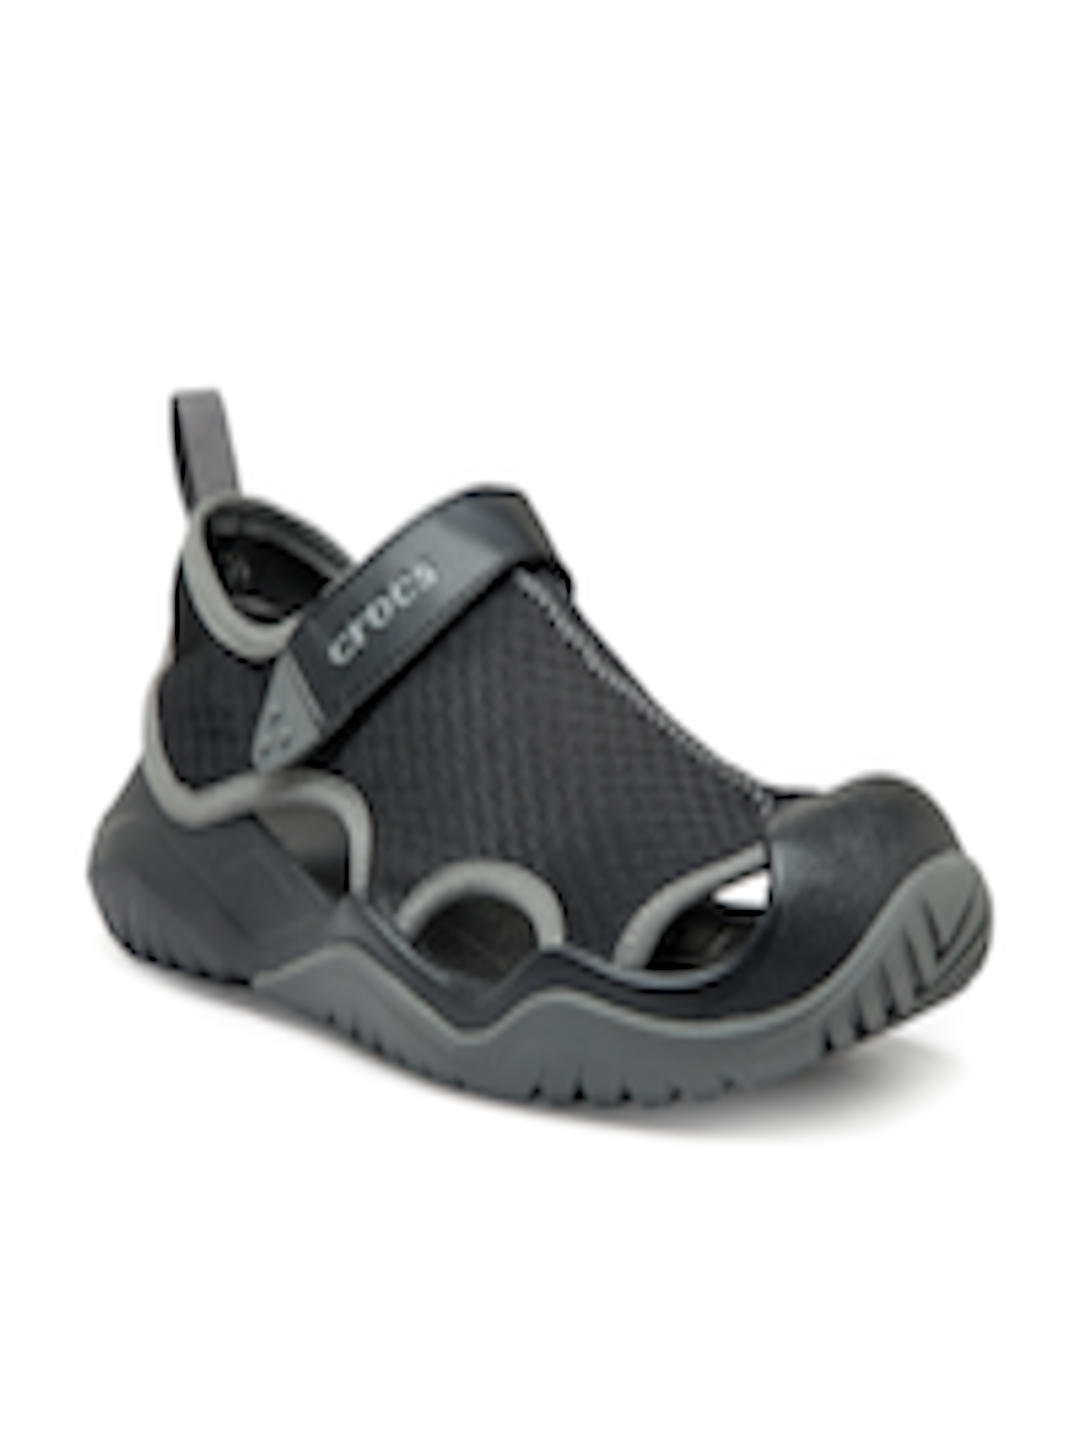 Buy Crocs  Men  Black Comfort Sandals  Sandals  for Men  